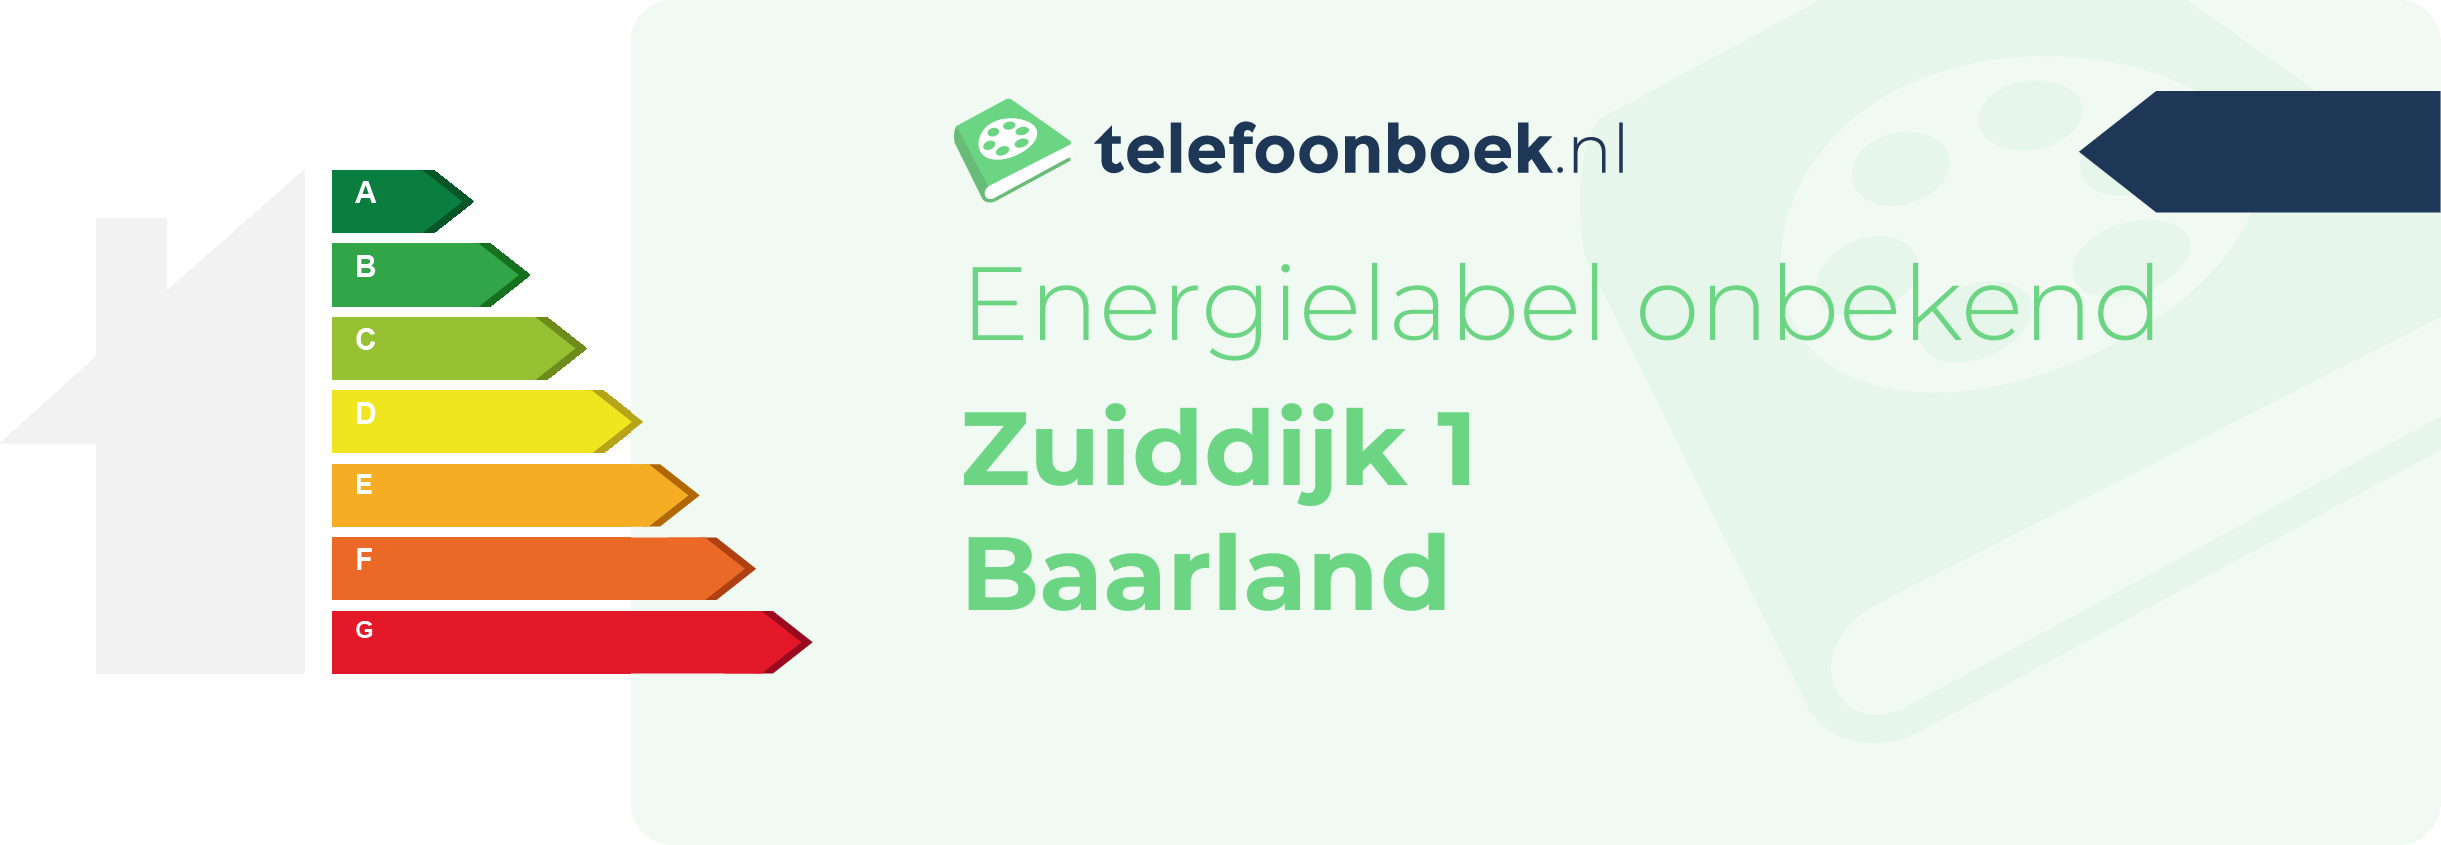 Energielabel Zuiddijk 1 Baarland